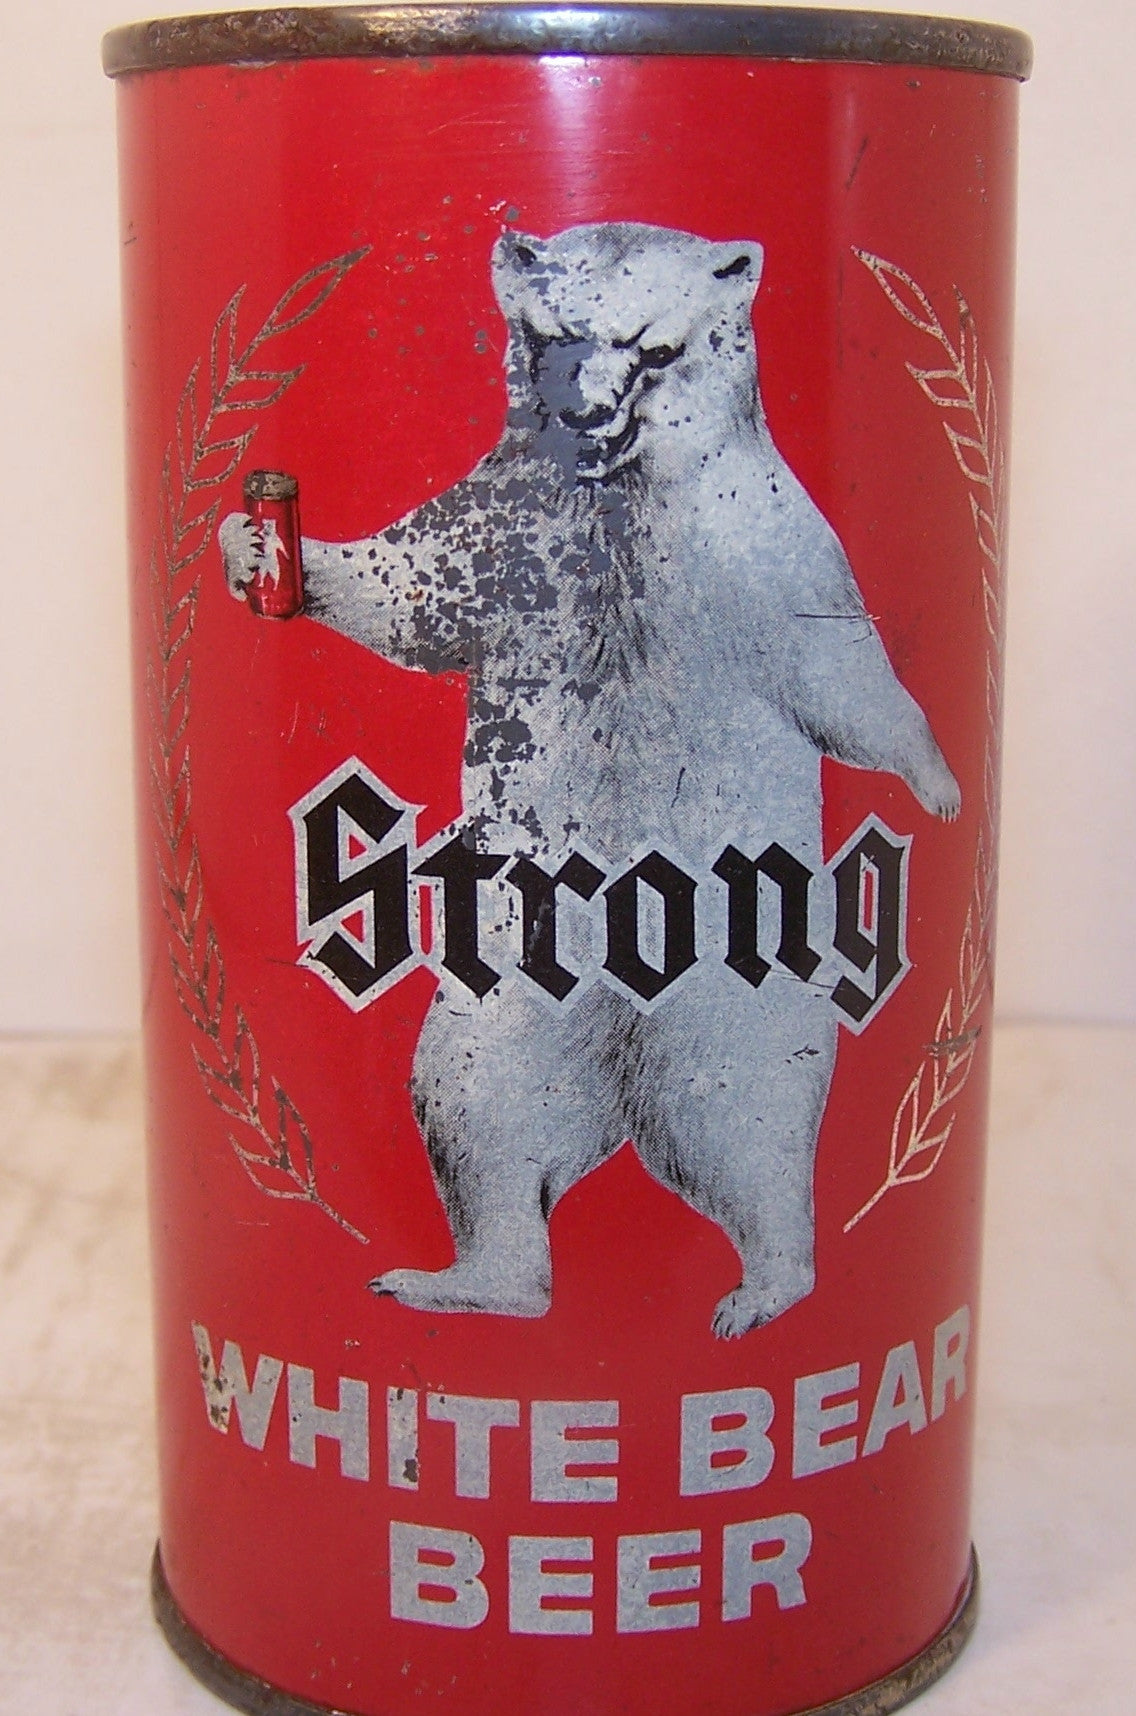 White Bear Beer, USBC 145-13, Grade 1- Sold on 06/22/17